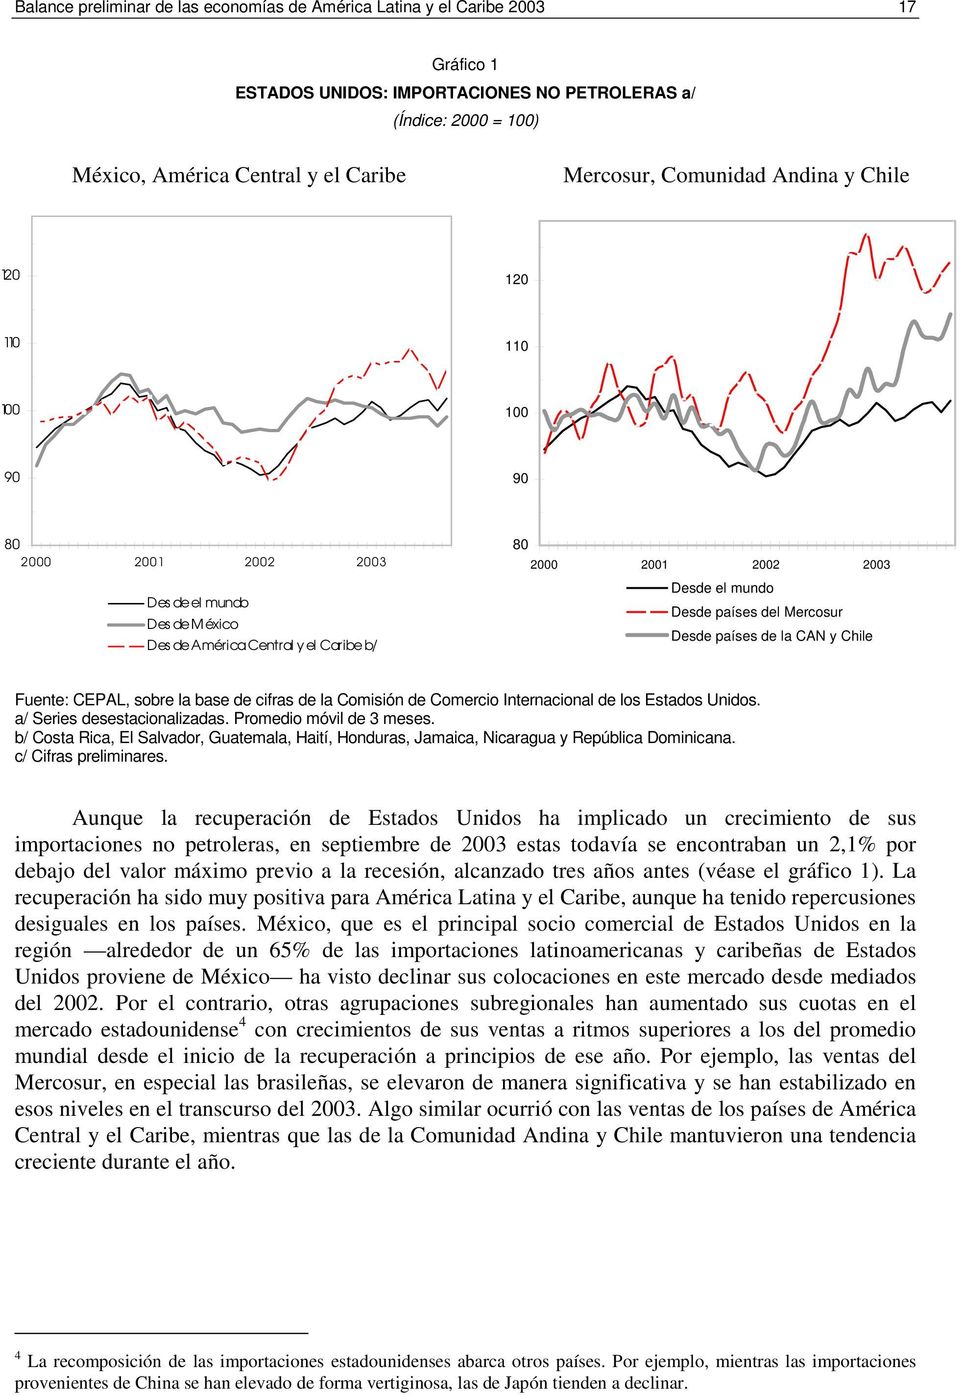 Mercosur Desde países de la CAN y Chile Fuente: CEPAL, sobre la base de cifras de la Comisión de Comercio Internacional de los Estados Unidos. a/ Series desestacionalizadas. Promedio móvil de 3 meses.